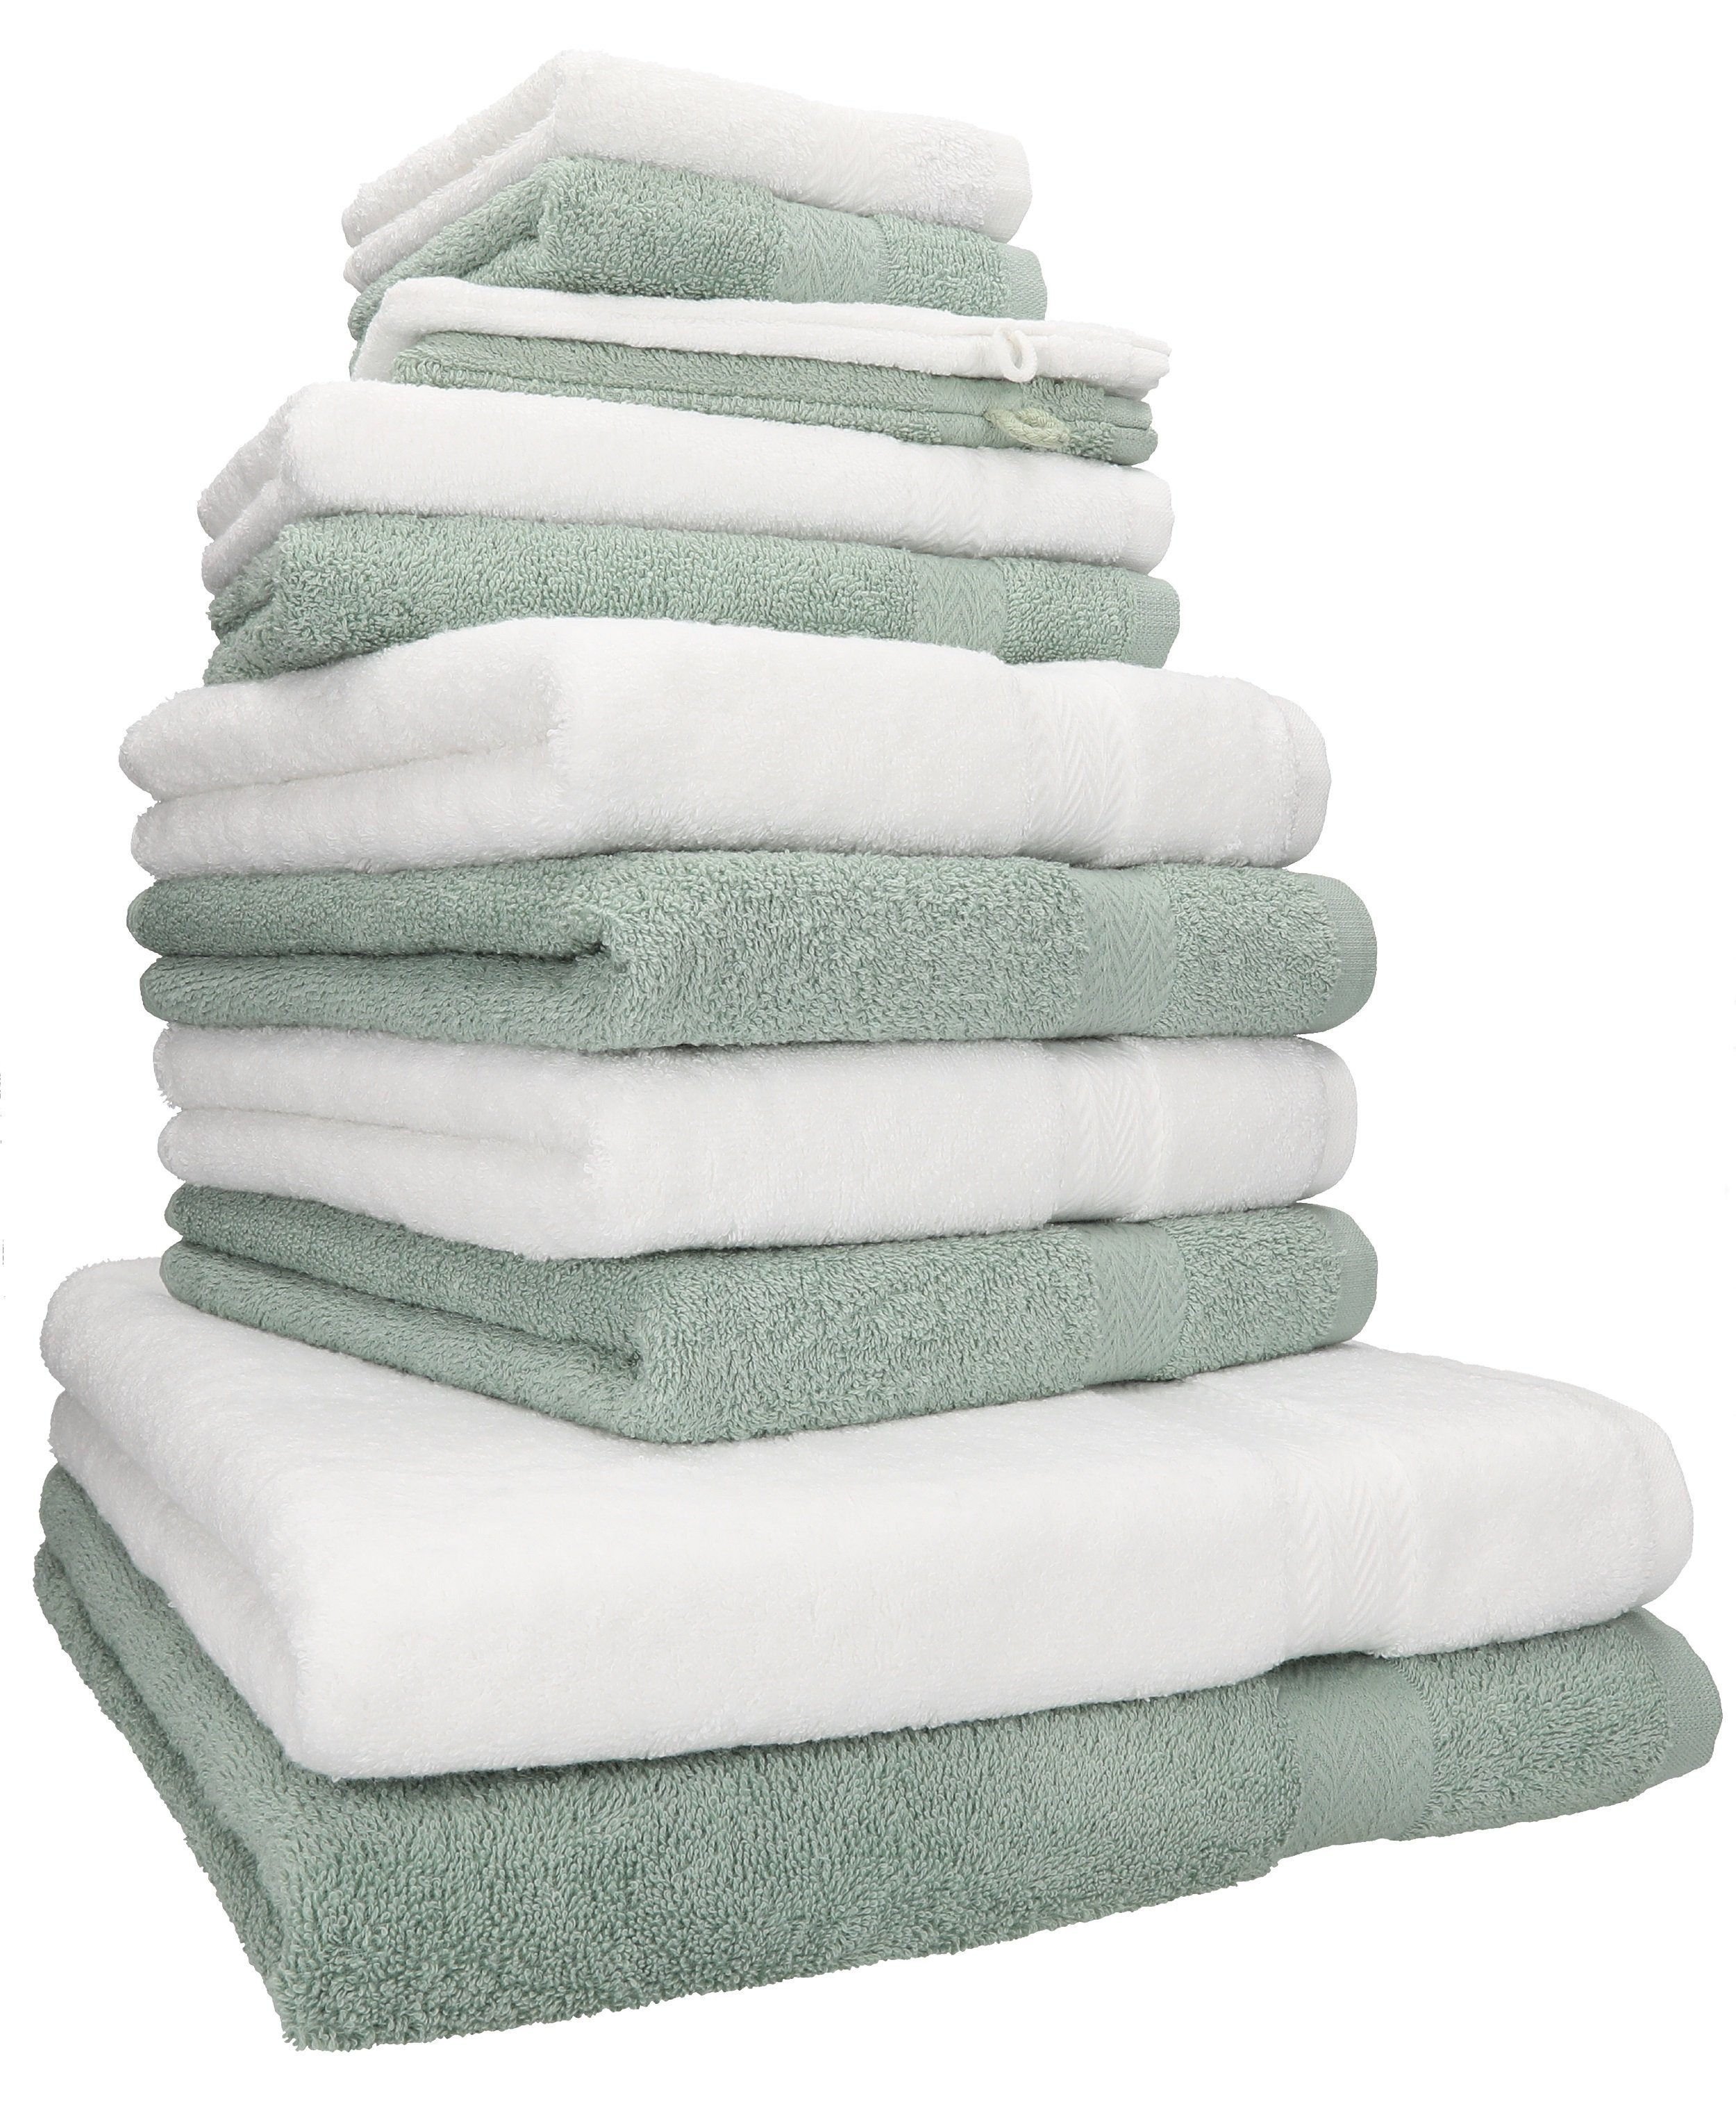 Betz Handtuch Set 12-TLG. Handtuch Set Premium Farbe weiß/heugrün, 100%  Baumwolle, (12-tlg)